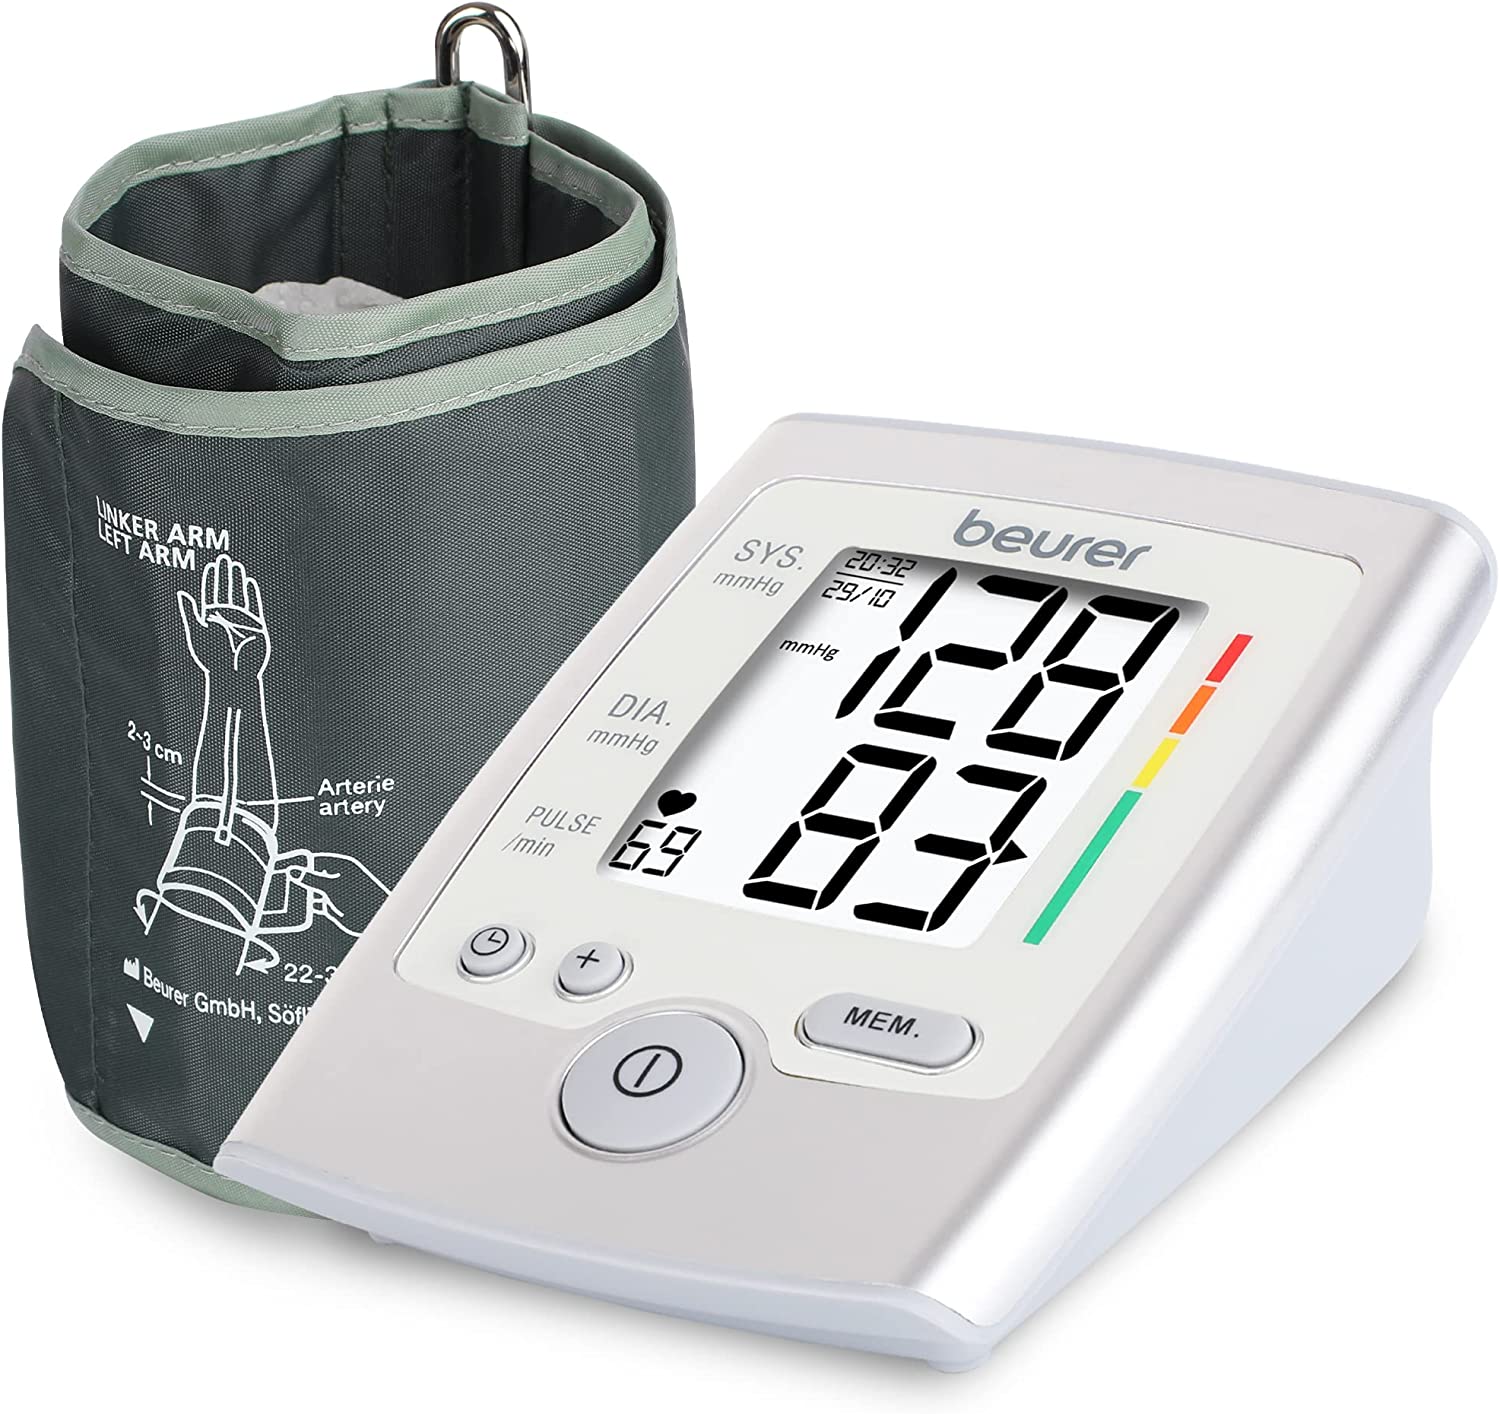 Beurer BM 35 Blood Pressure Monitor